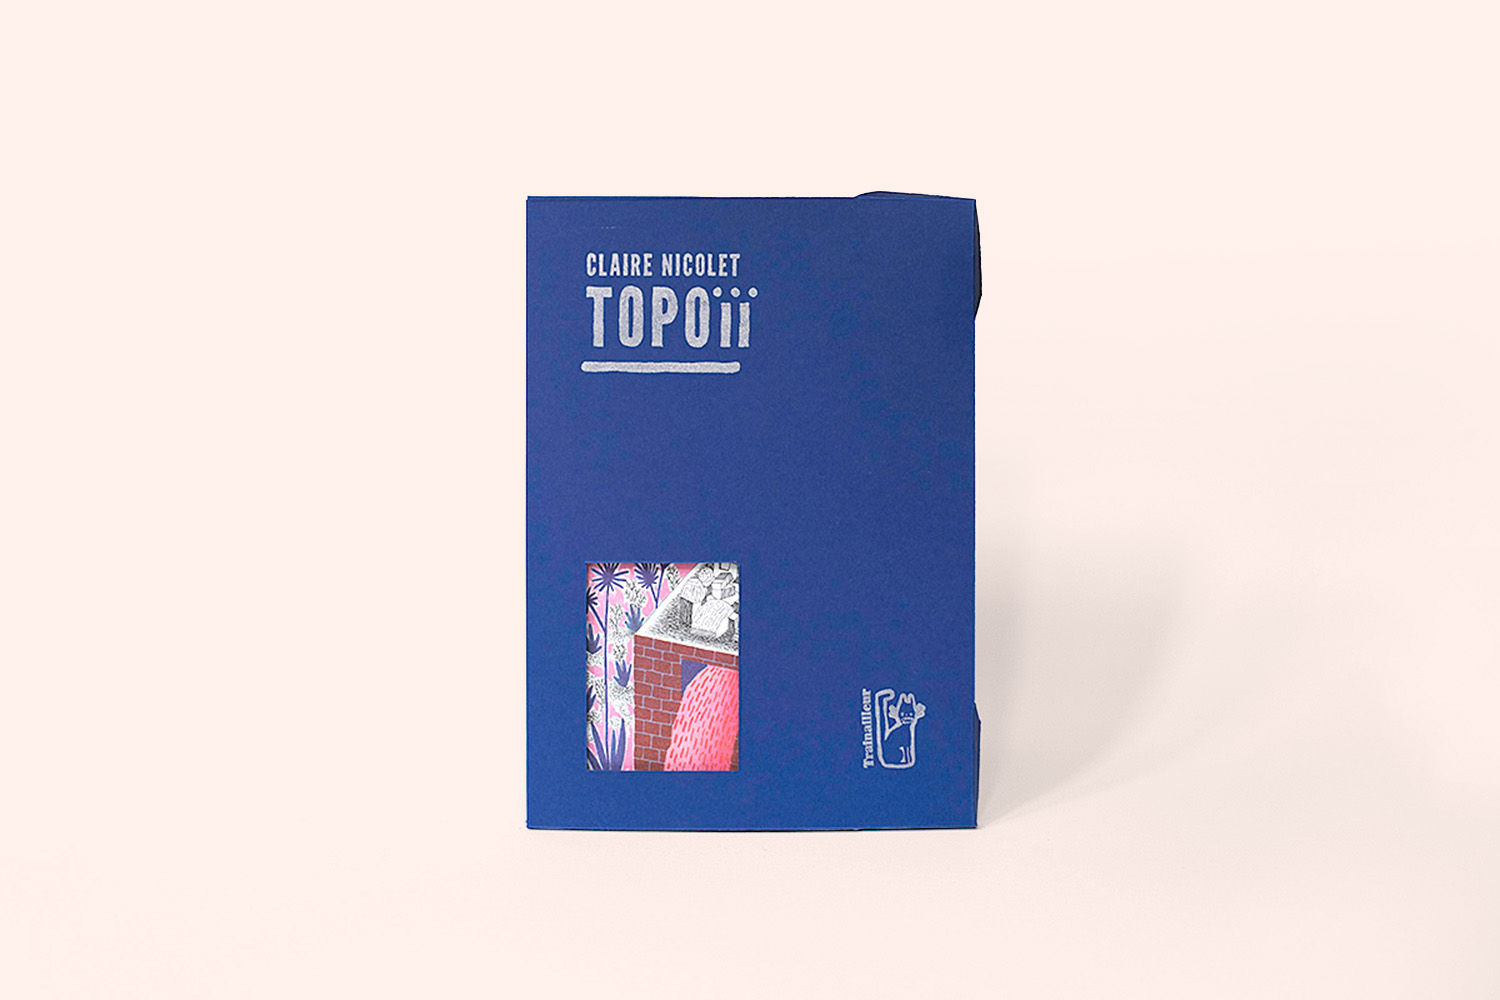 Couverture Topoïï, un livre de Claire Nicolet chez les éditions du Trainailleur